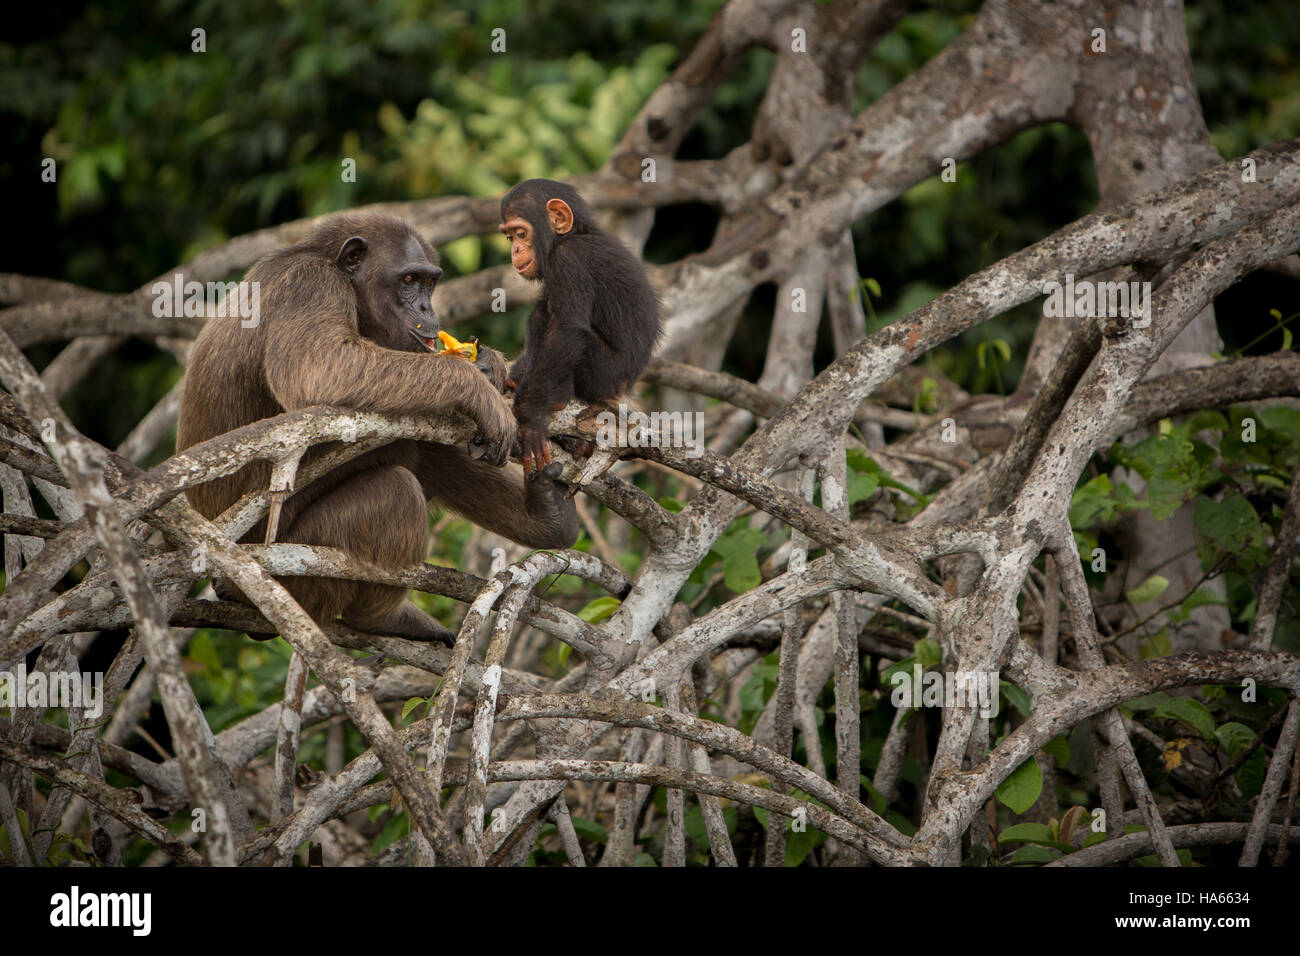 Belle en Afrique chimpanzé, pan troglodytes, singes sauvages dans la nature, de l'habitat de la faune africaine pure avec beaucoup d'animaux. Banque D'Images